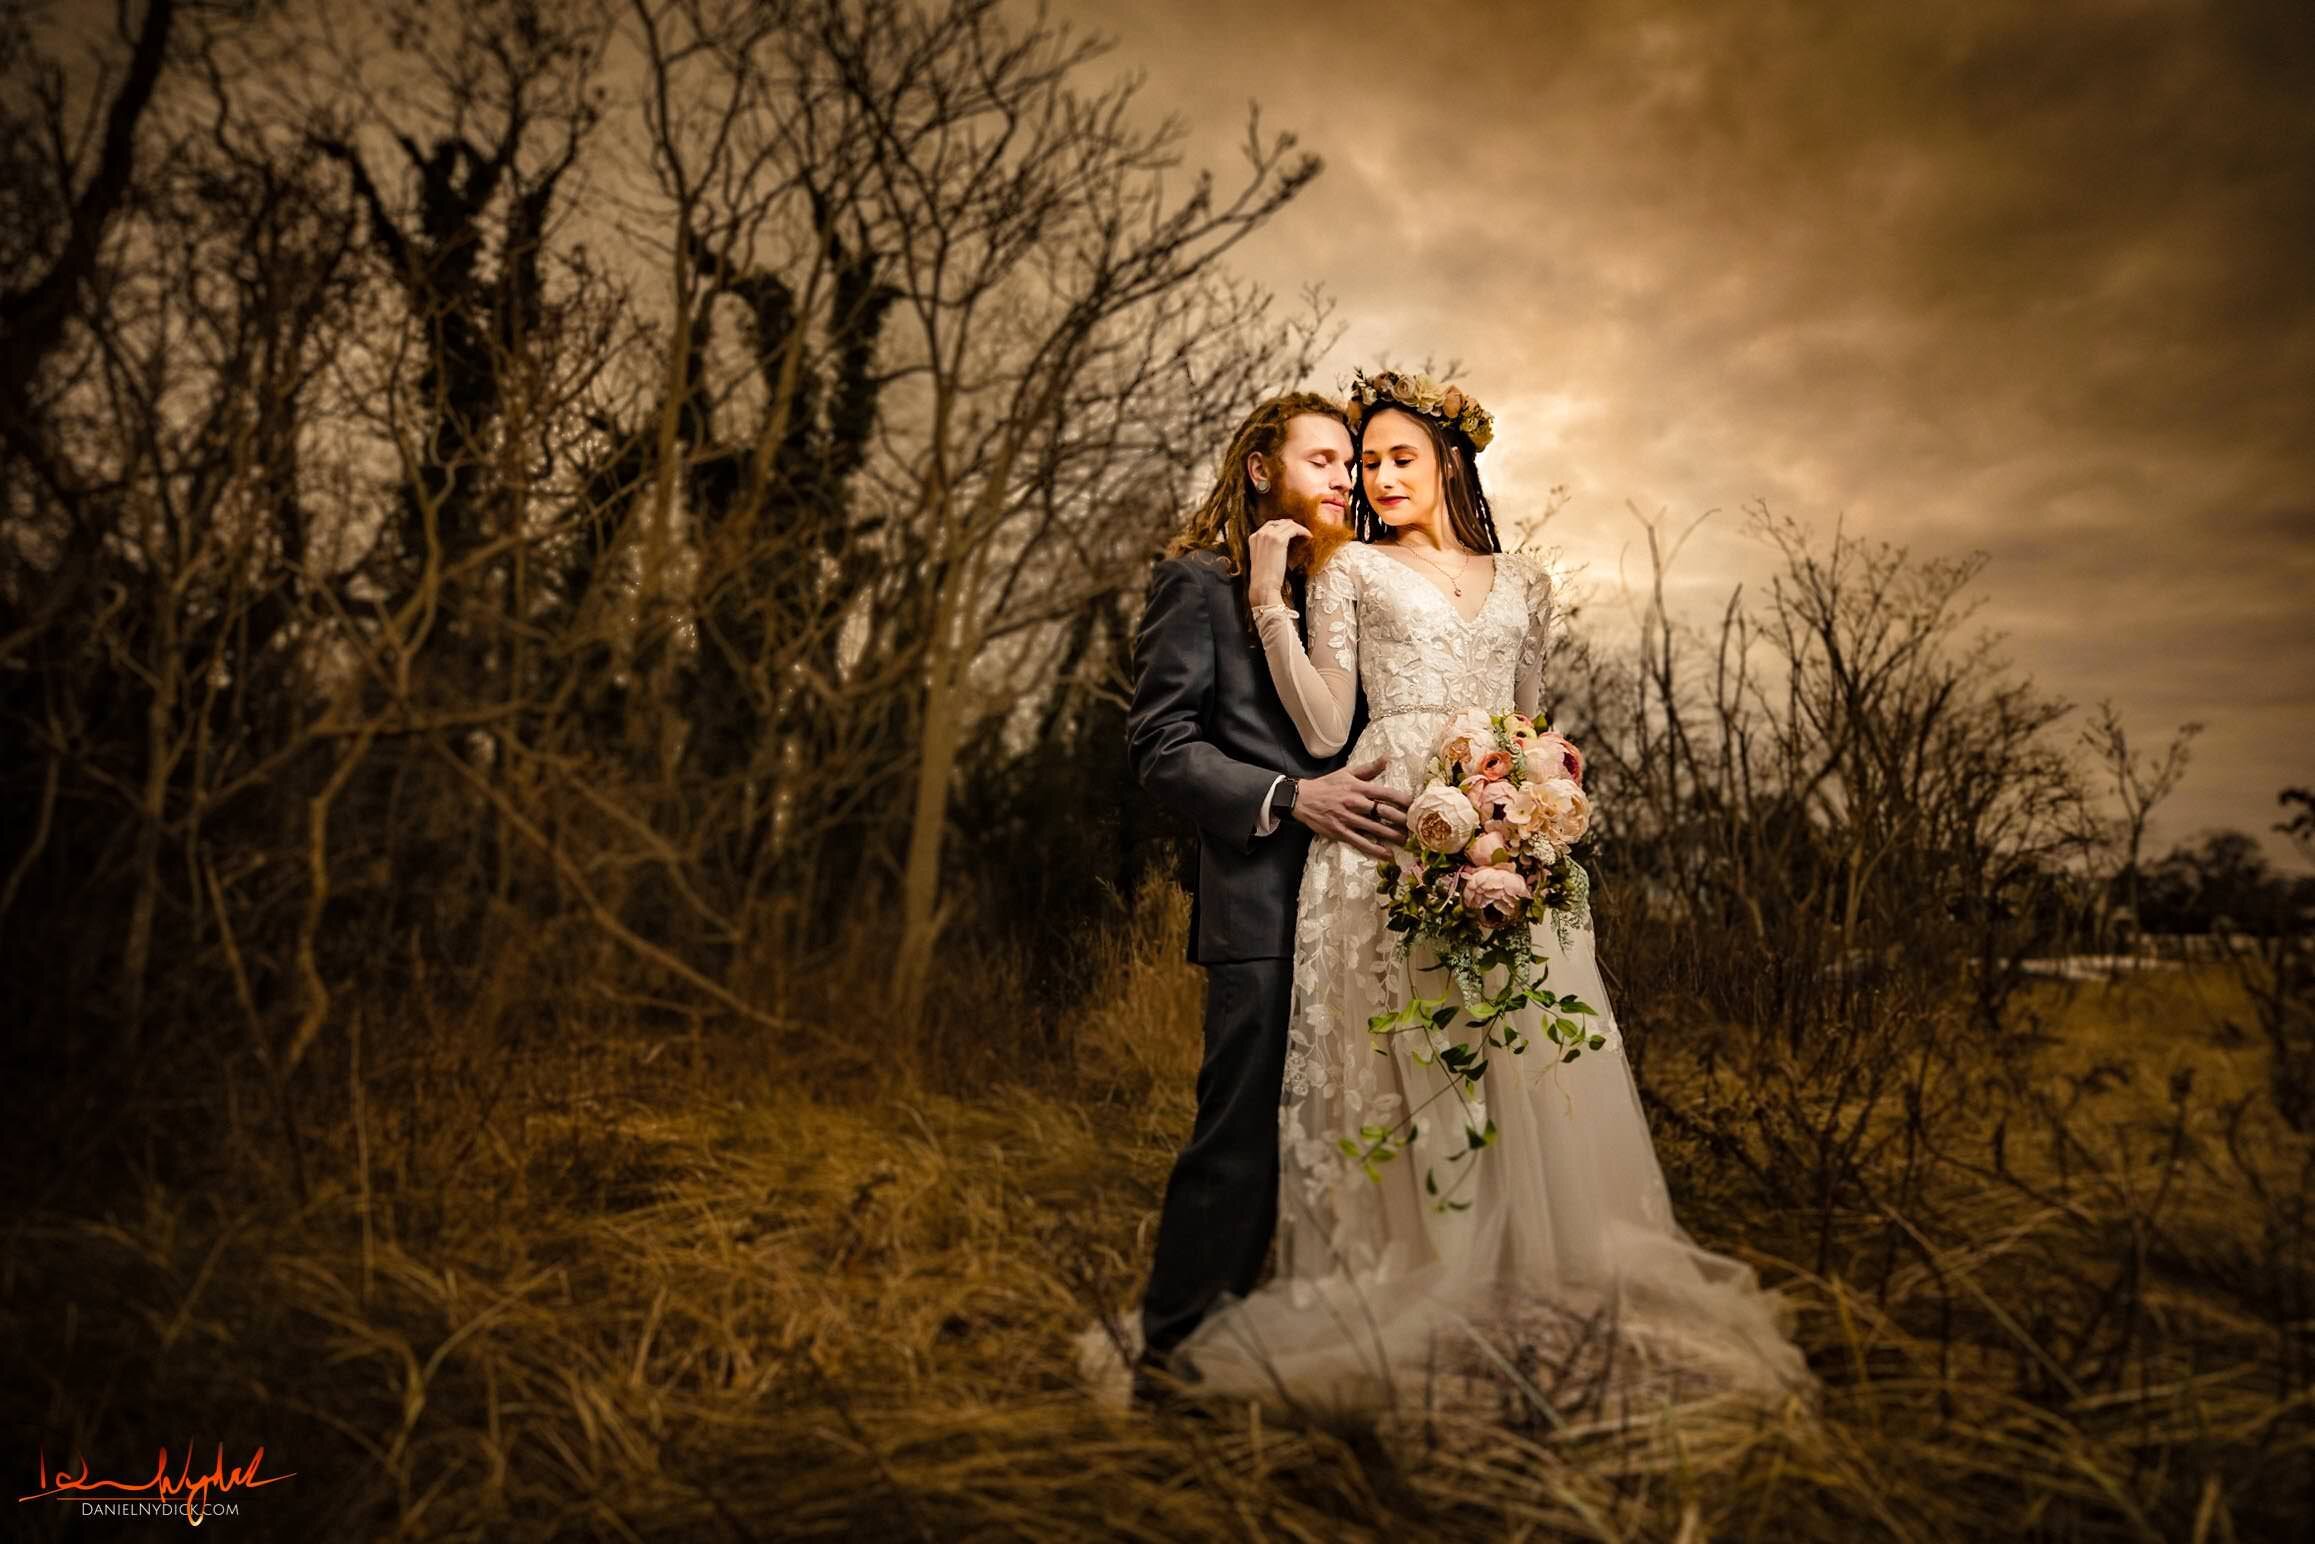 Daniel Nydick NJ best wedding, engagement, couples portrait phot